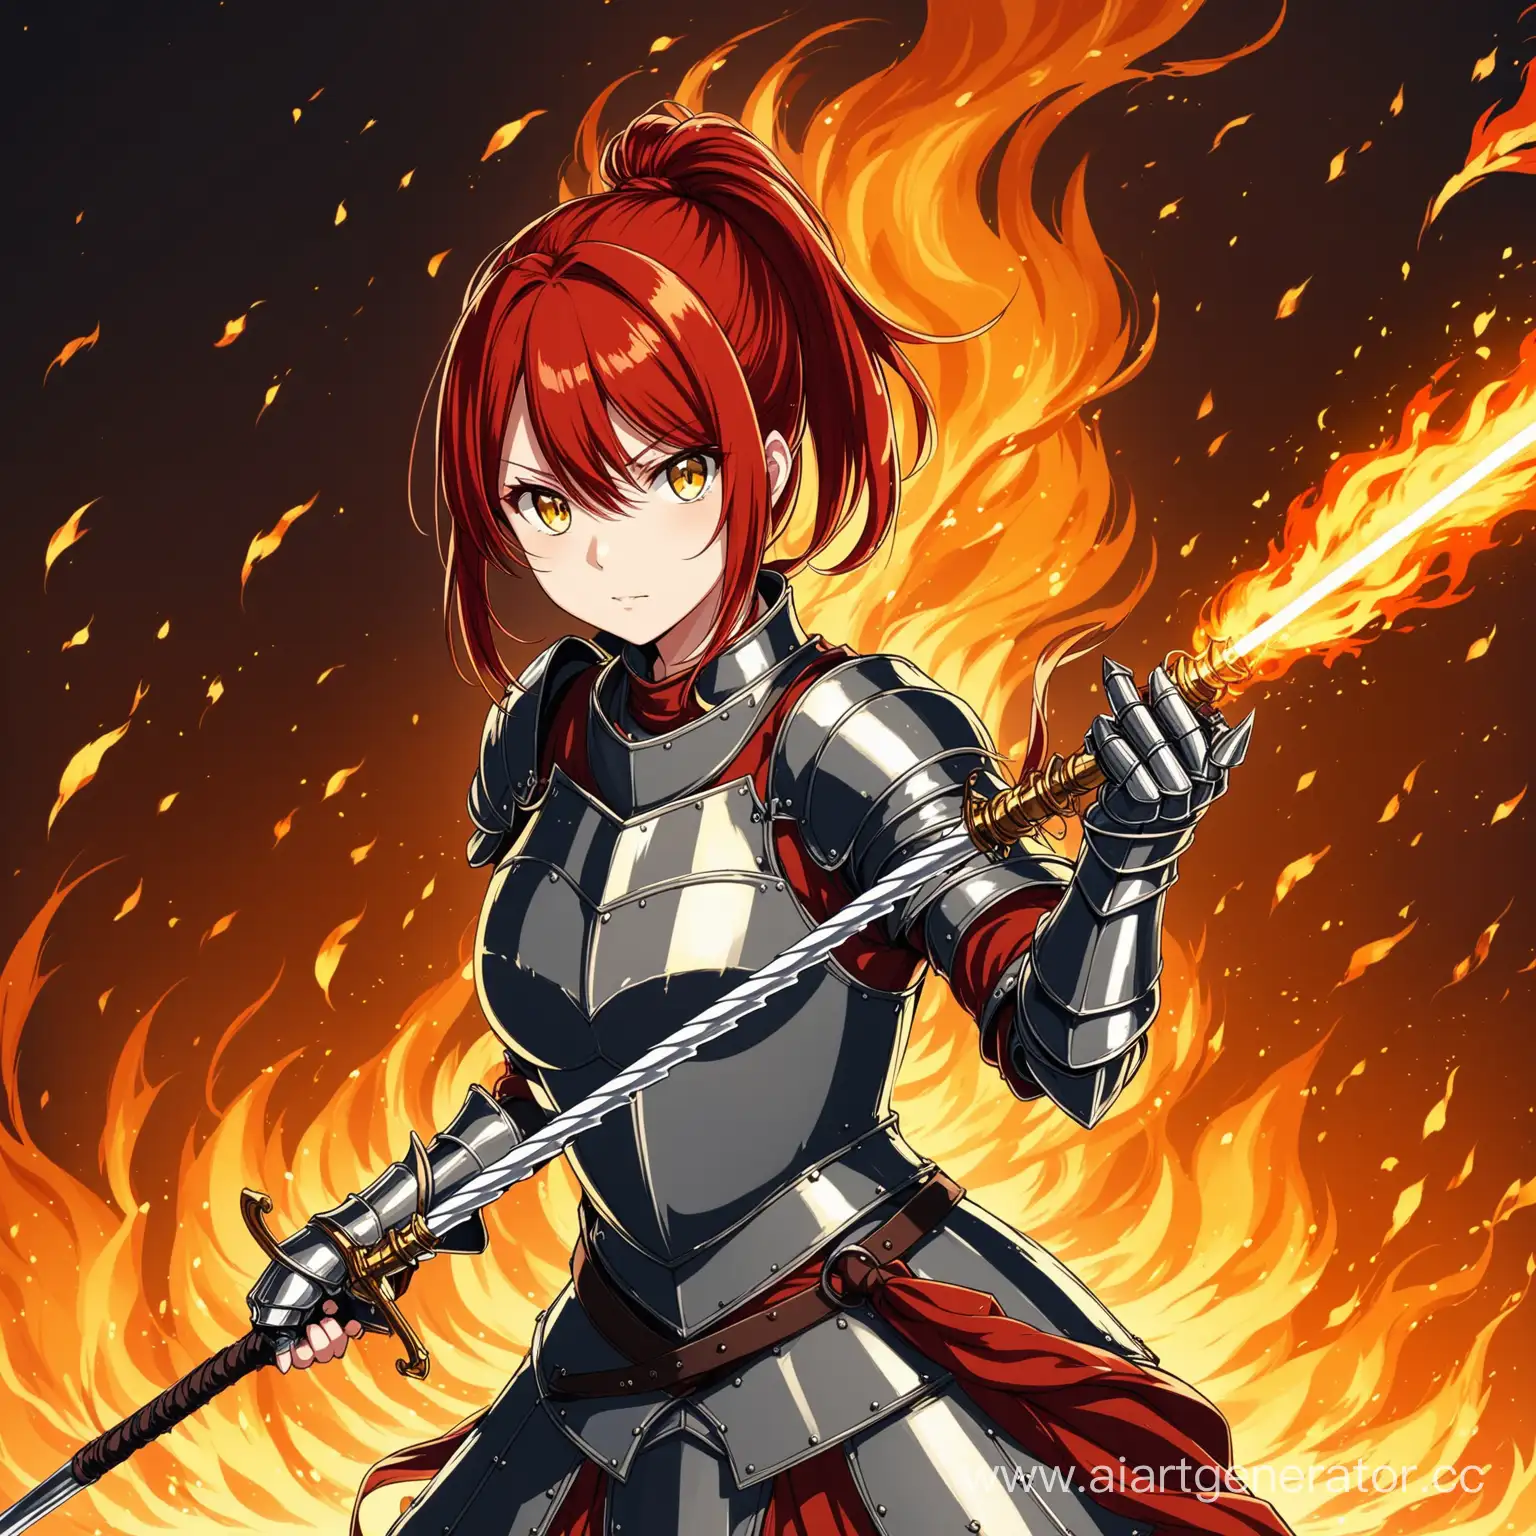 Fiery-RedHaired-Anime-Knight-Girl-Wielding-Rapier